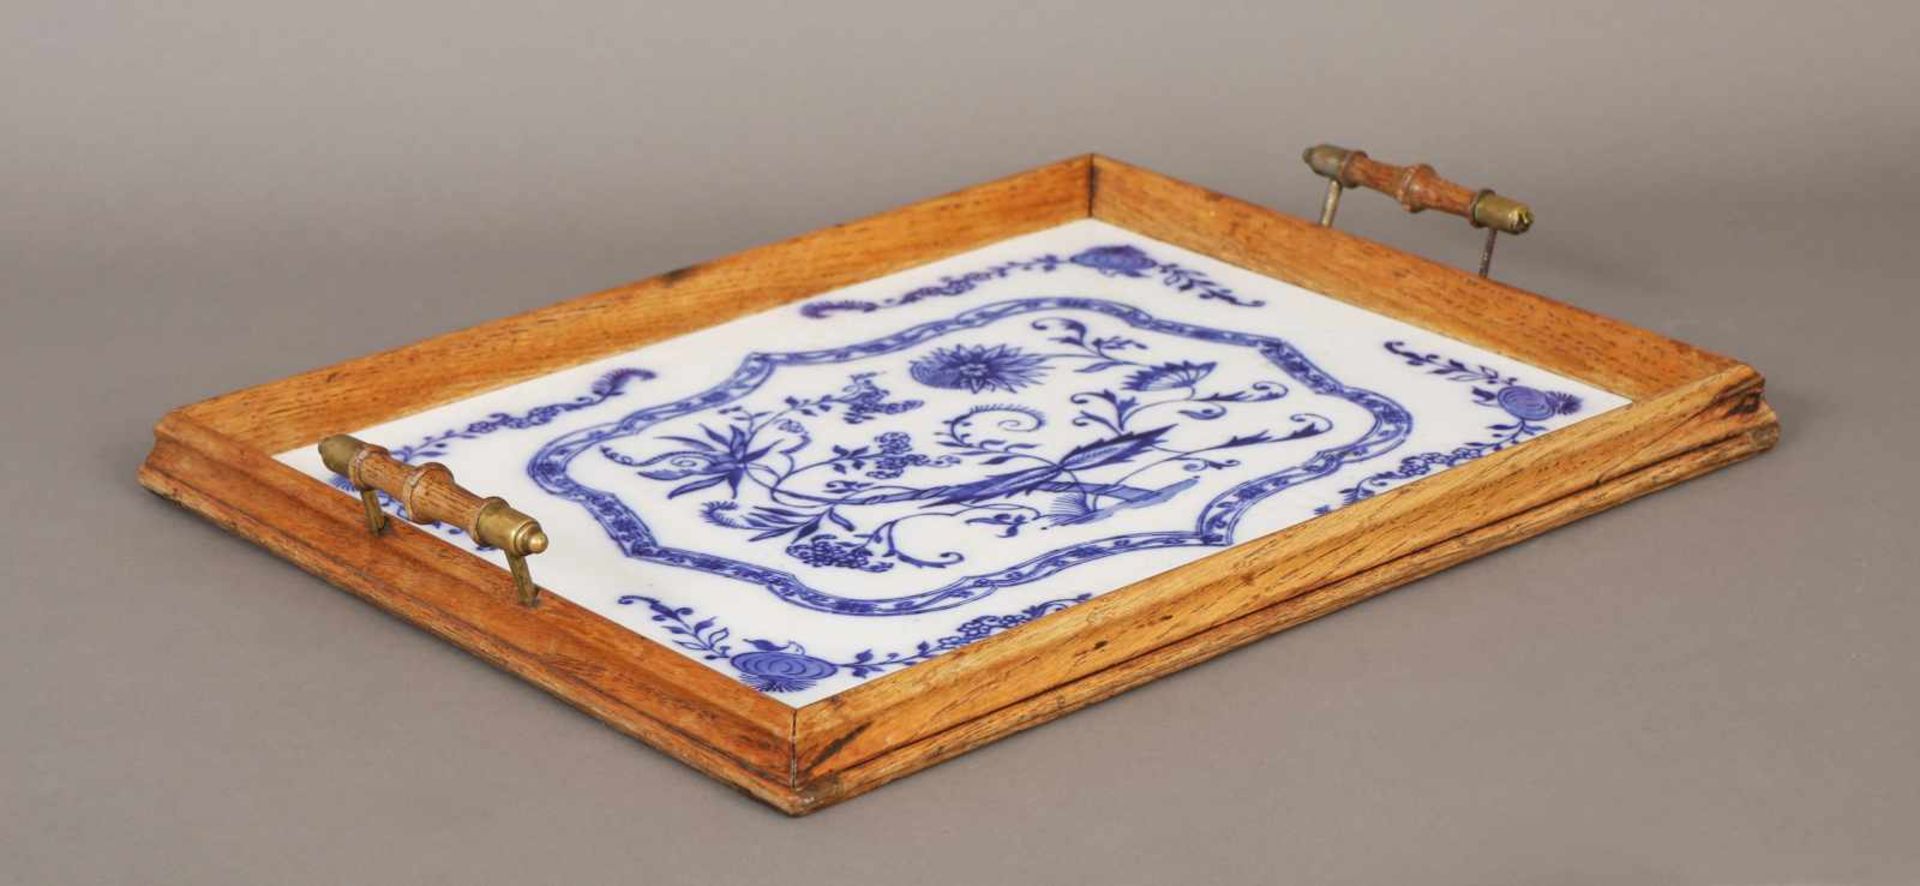 TablettHolz und Porzellan/Keramik, um 1900, eckiges Tablett mit 2 seitlichen Steggriffen, Platte mit